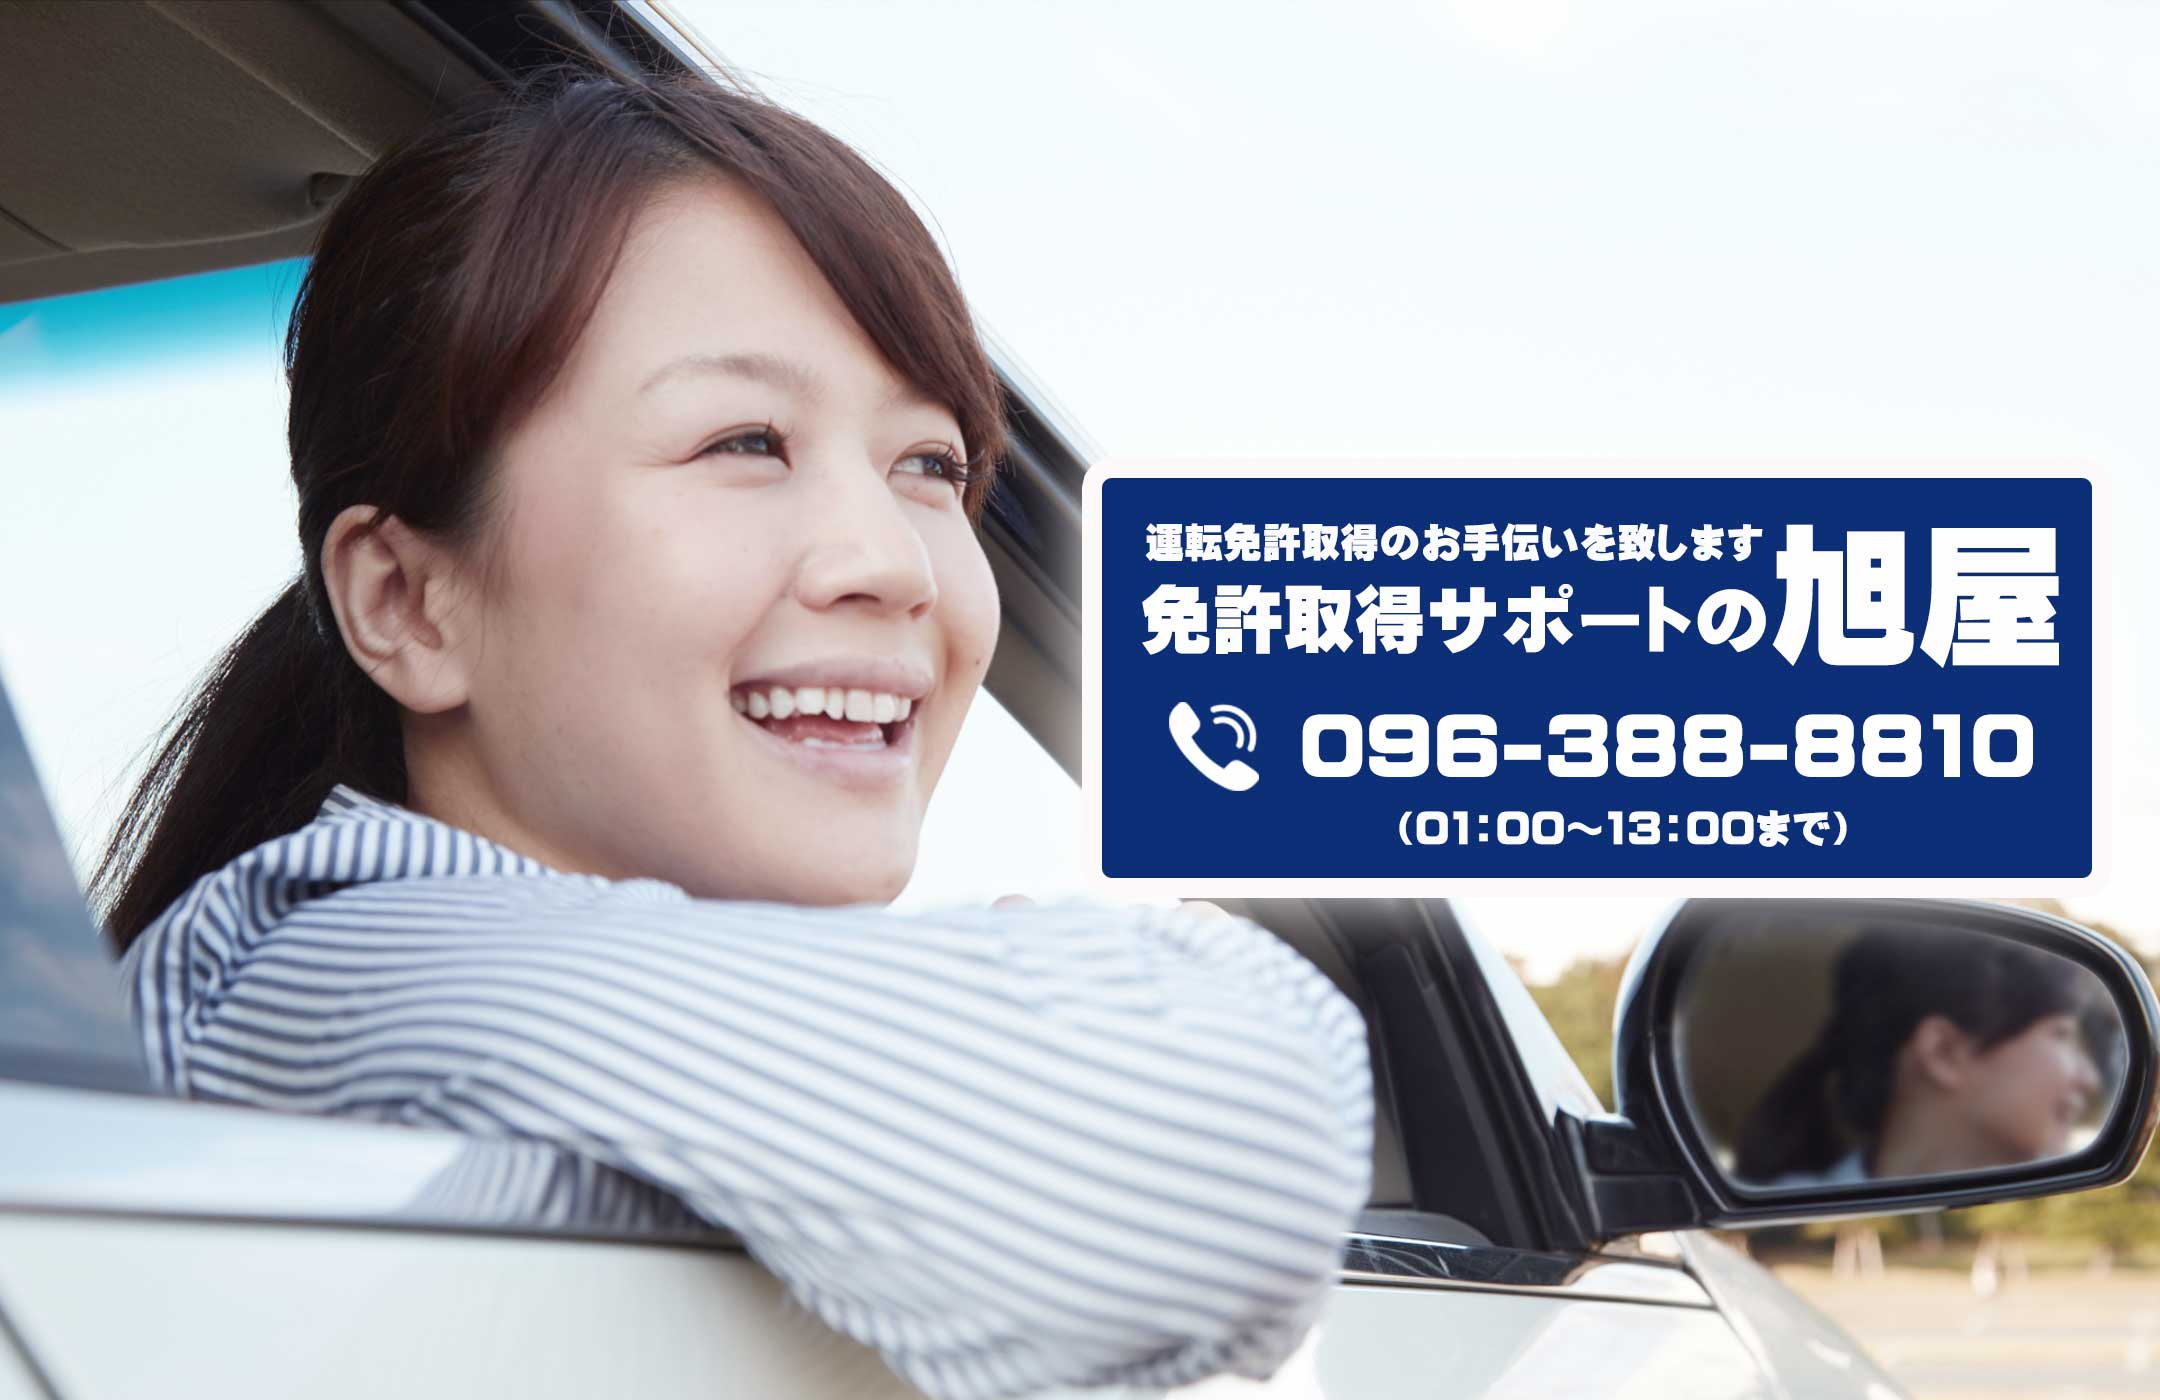 免許の旭屋 熊本で免許の事ならおまかせ下さい 運転免許取得をサポート致します免許の旭屋です